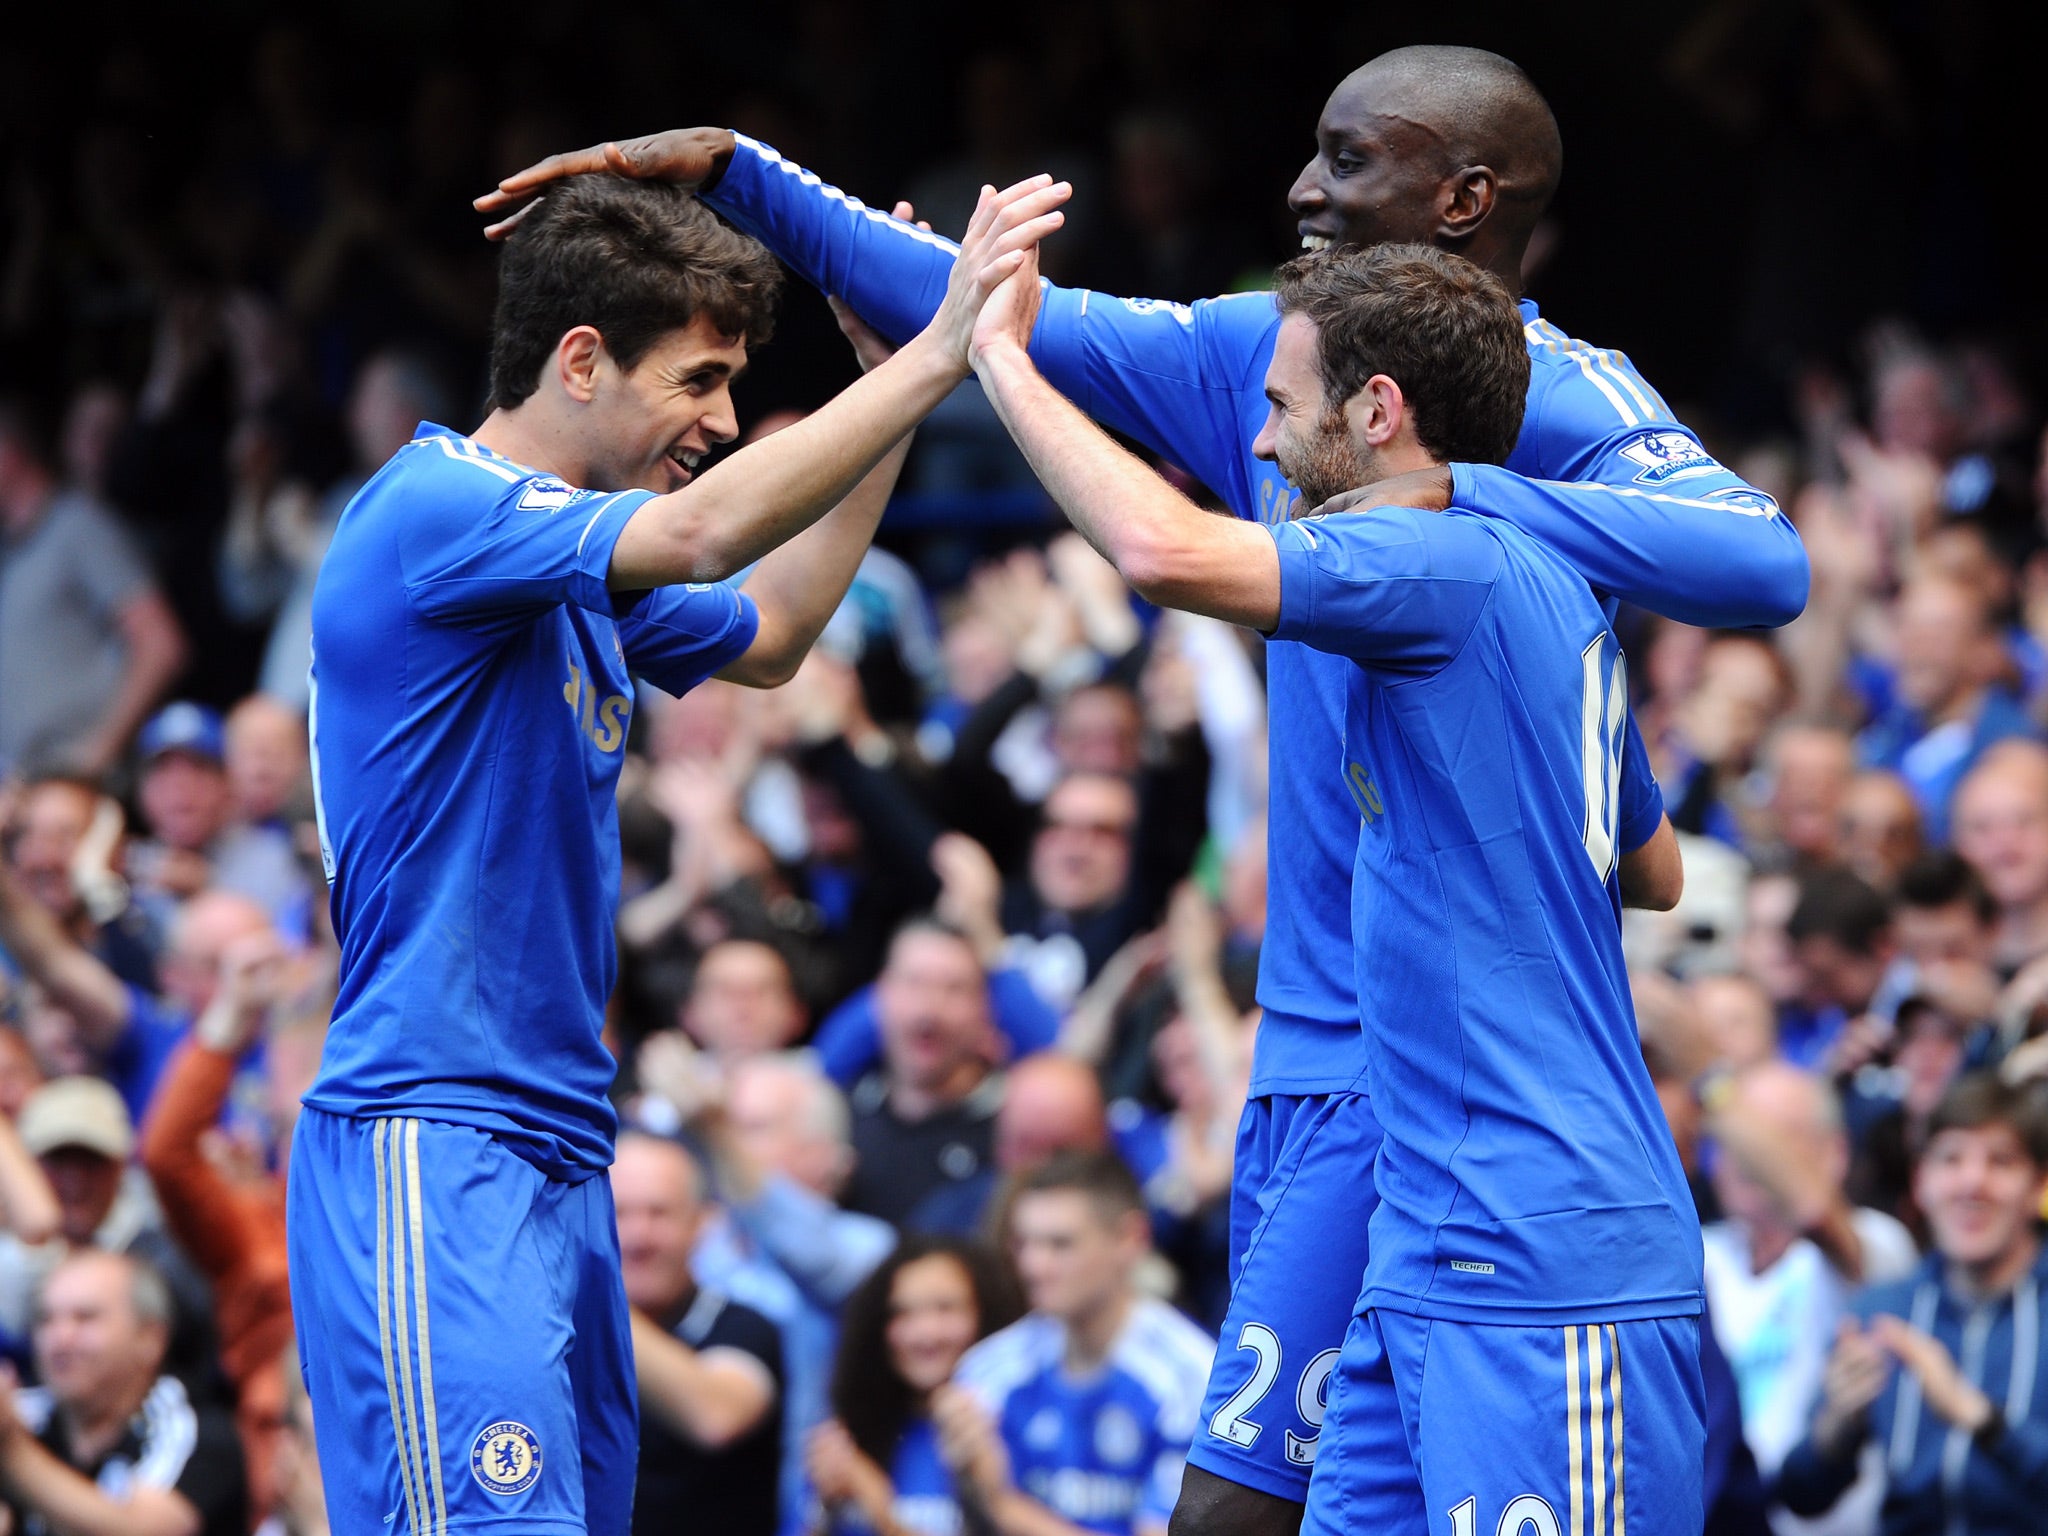 Juan Mata celebrates after opening the scoring at Stamford Bridge